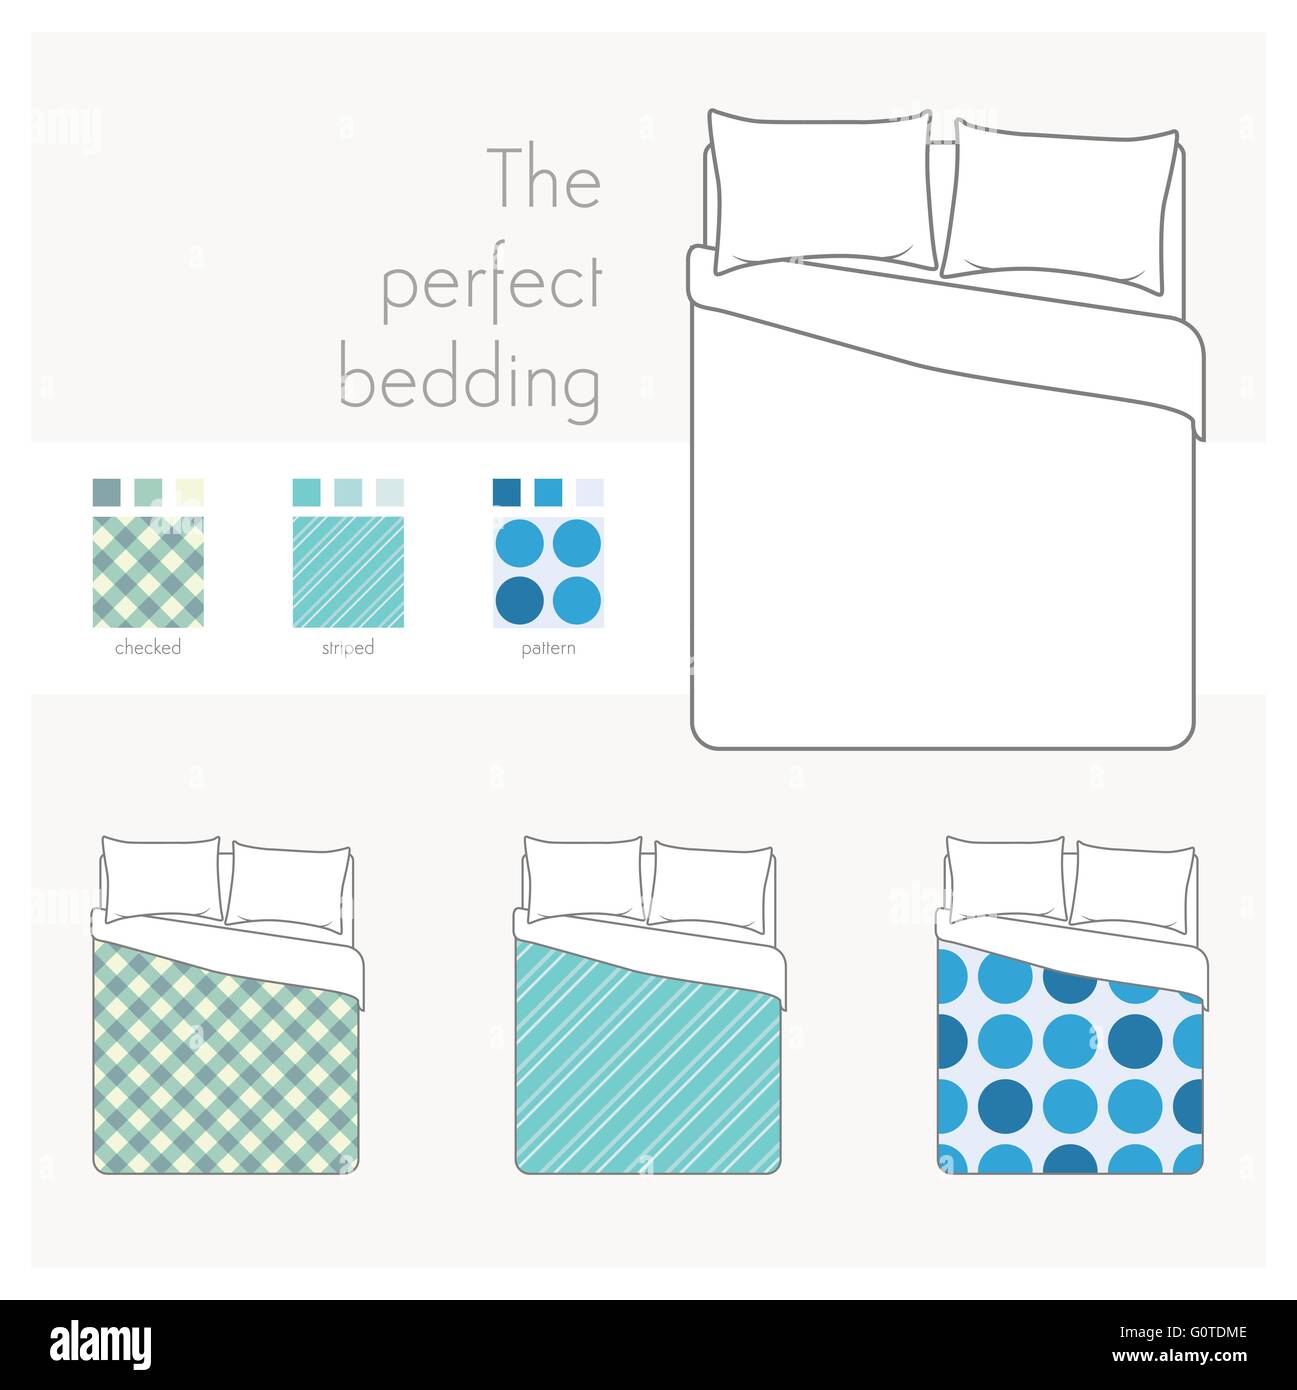 Die perfekte Bettwäsche-Infografik, festlegen Bett Draufsicht und Muster Stock Vektor